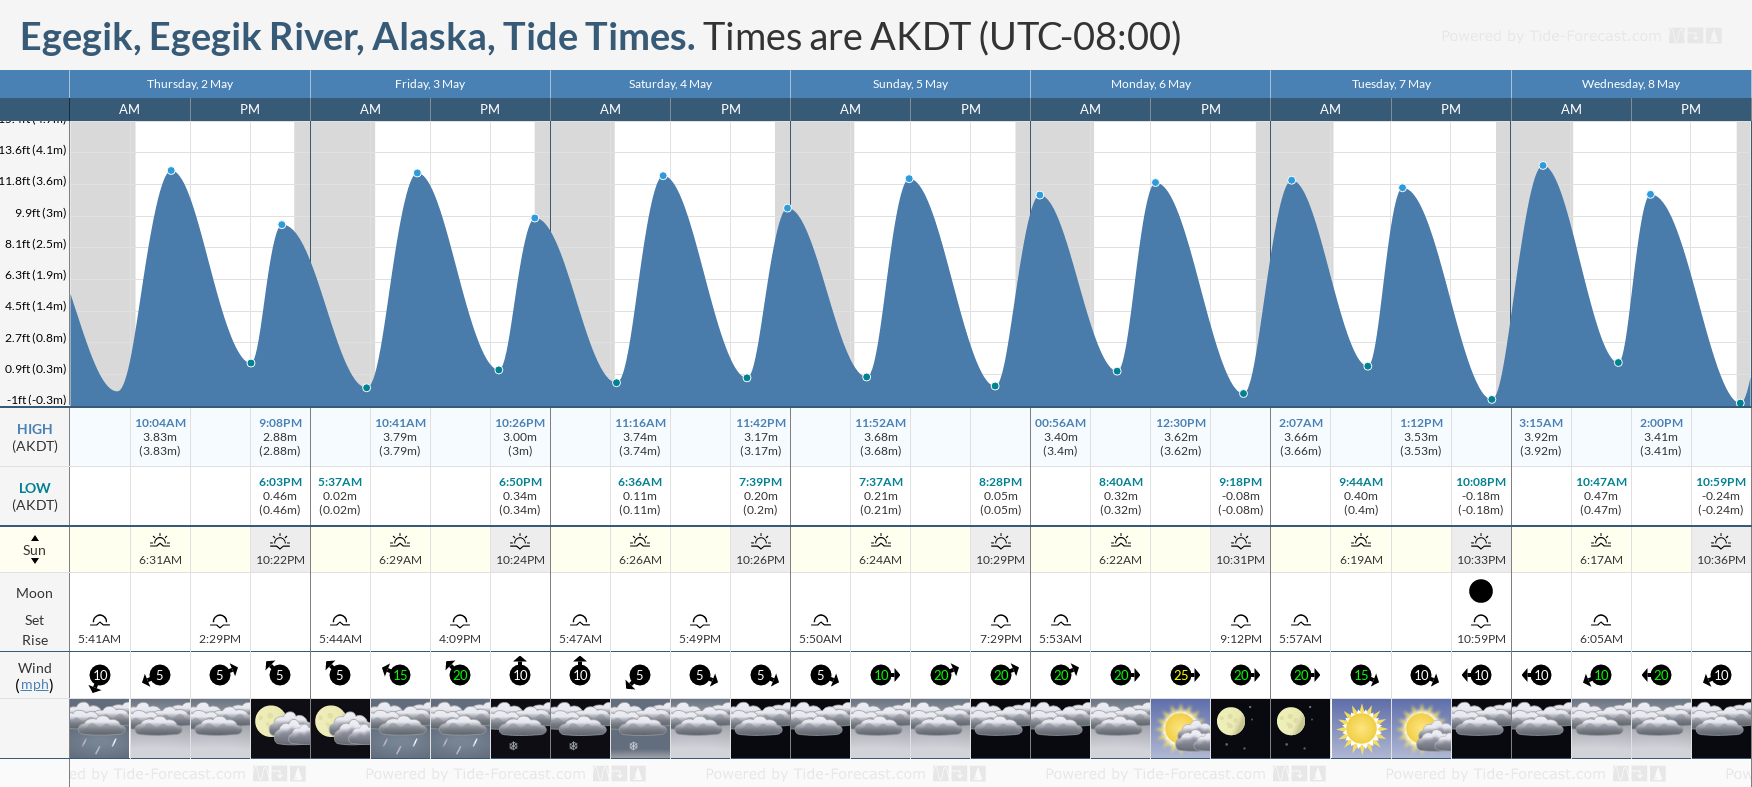 Egegik, Egegik River, Alaska Tide Chart including high and low tide tide times for the next 7 days